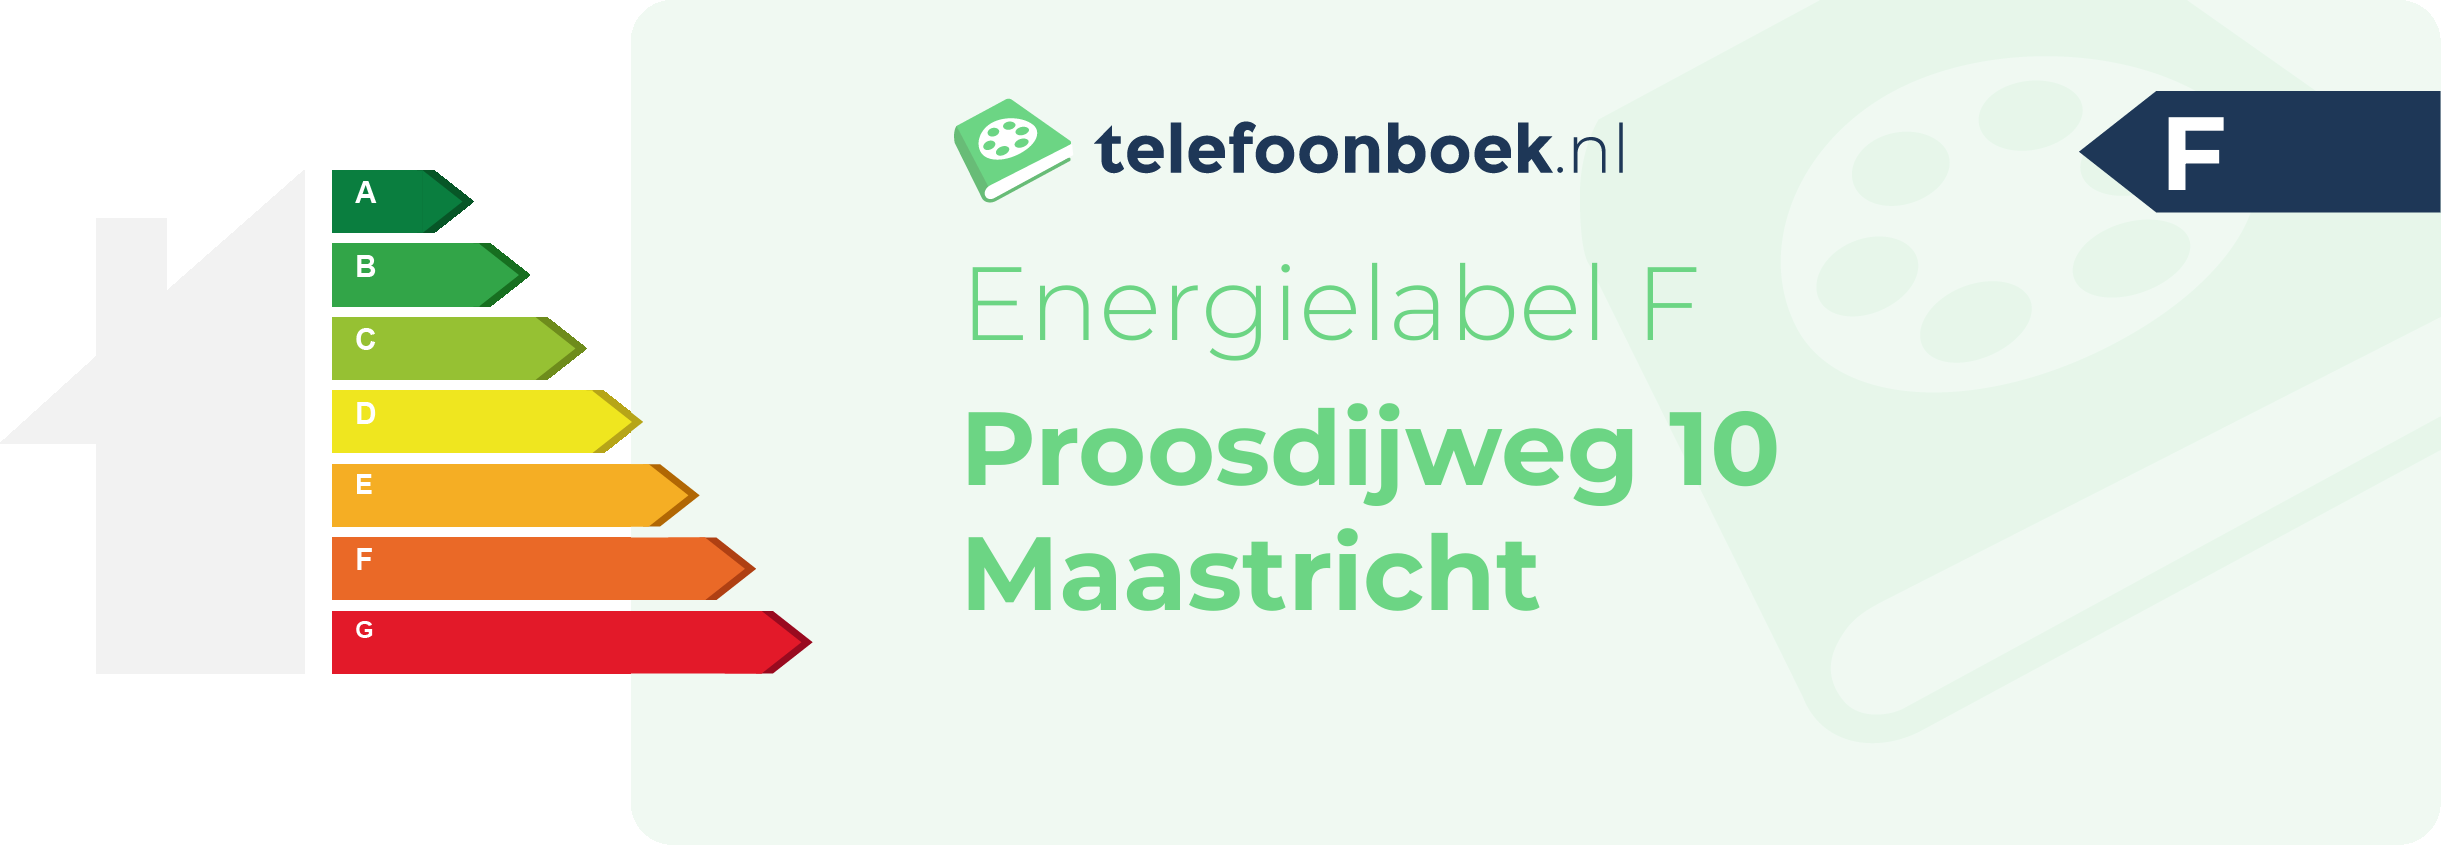 Energielabel Proosdijweg 10 Maastricht